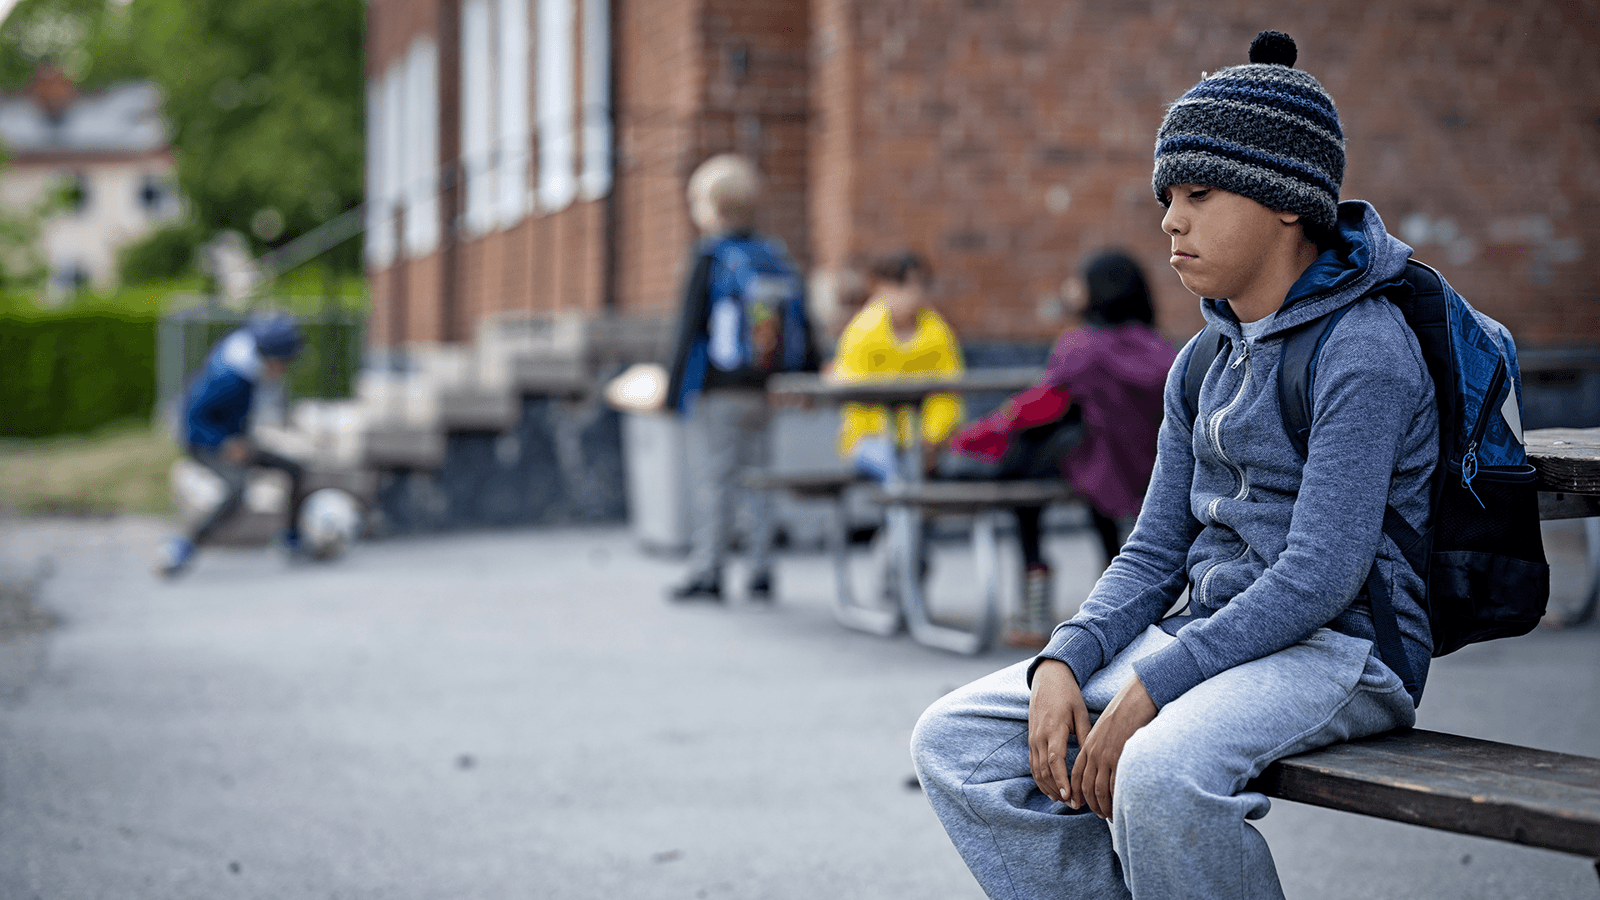 En pojke med ryggsäck sitter på en bänk på en skolgård och ser uppgiven ut. Man ser andra barn i bakgrunden.